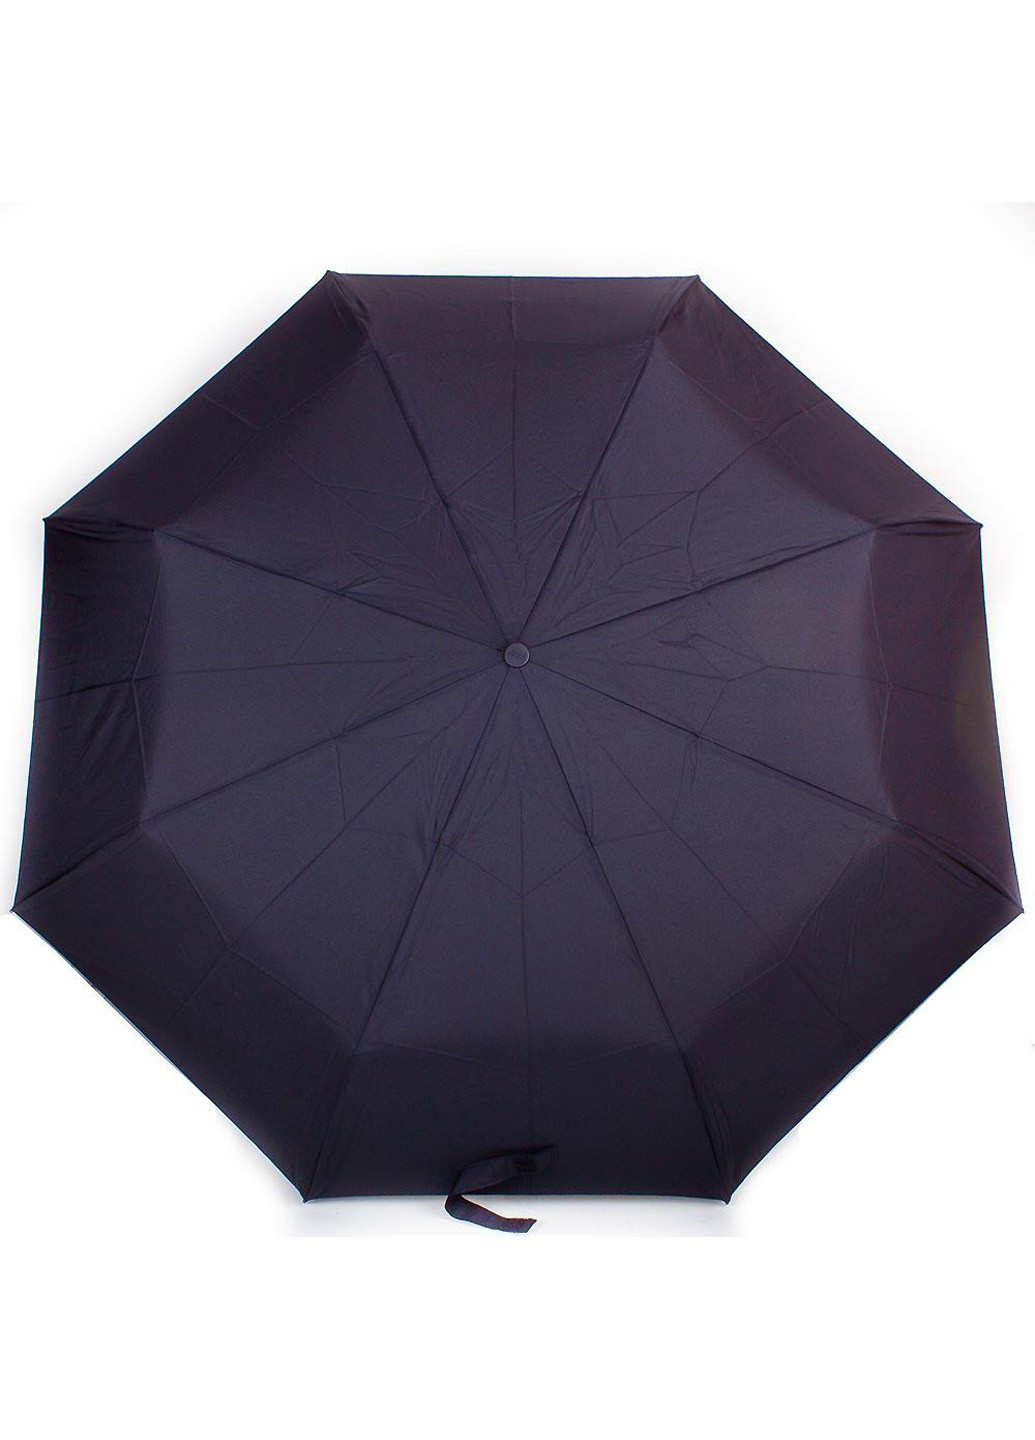 Мужской складной зонт механический 99 см Zest (198875875)